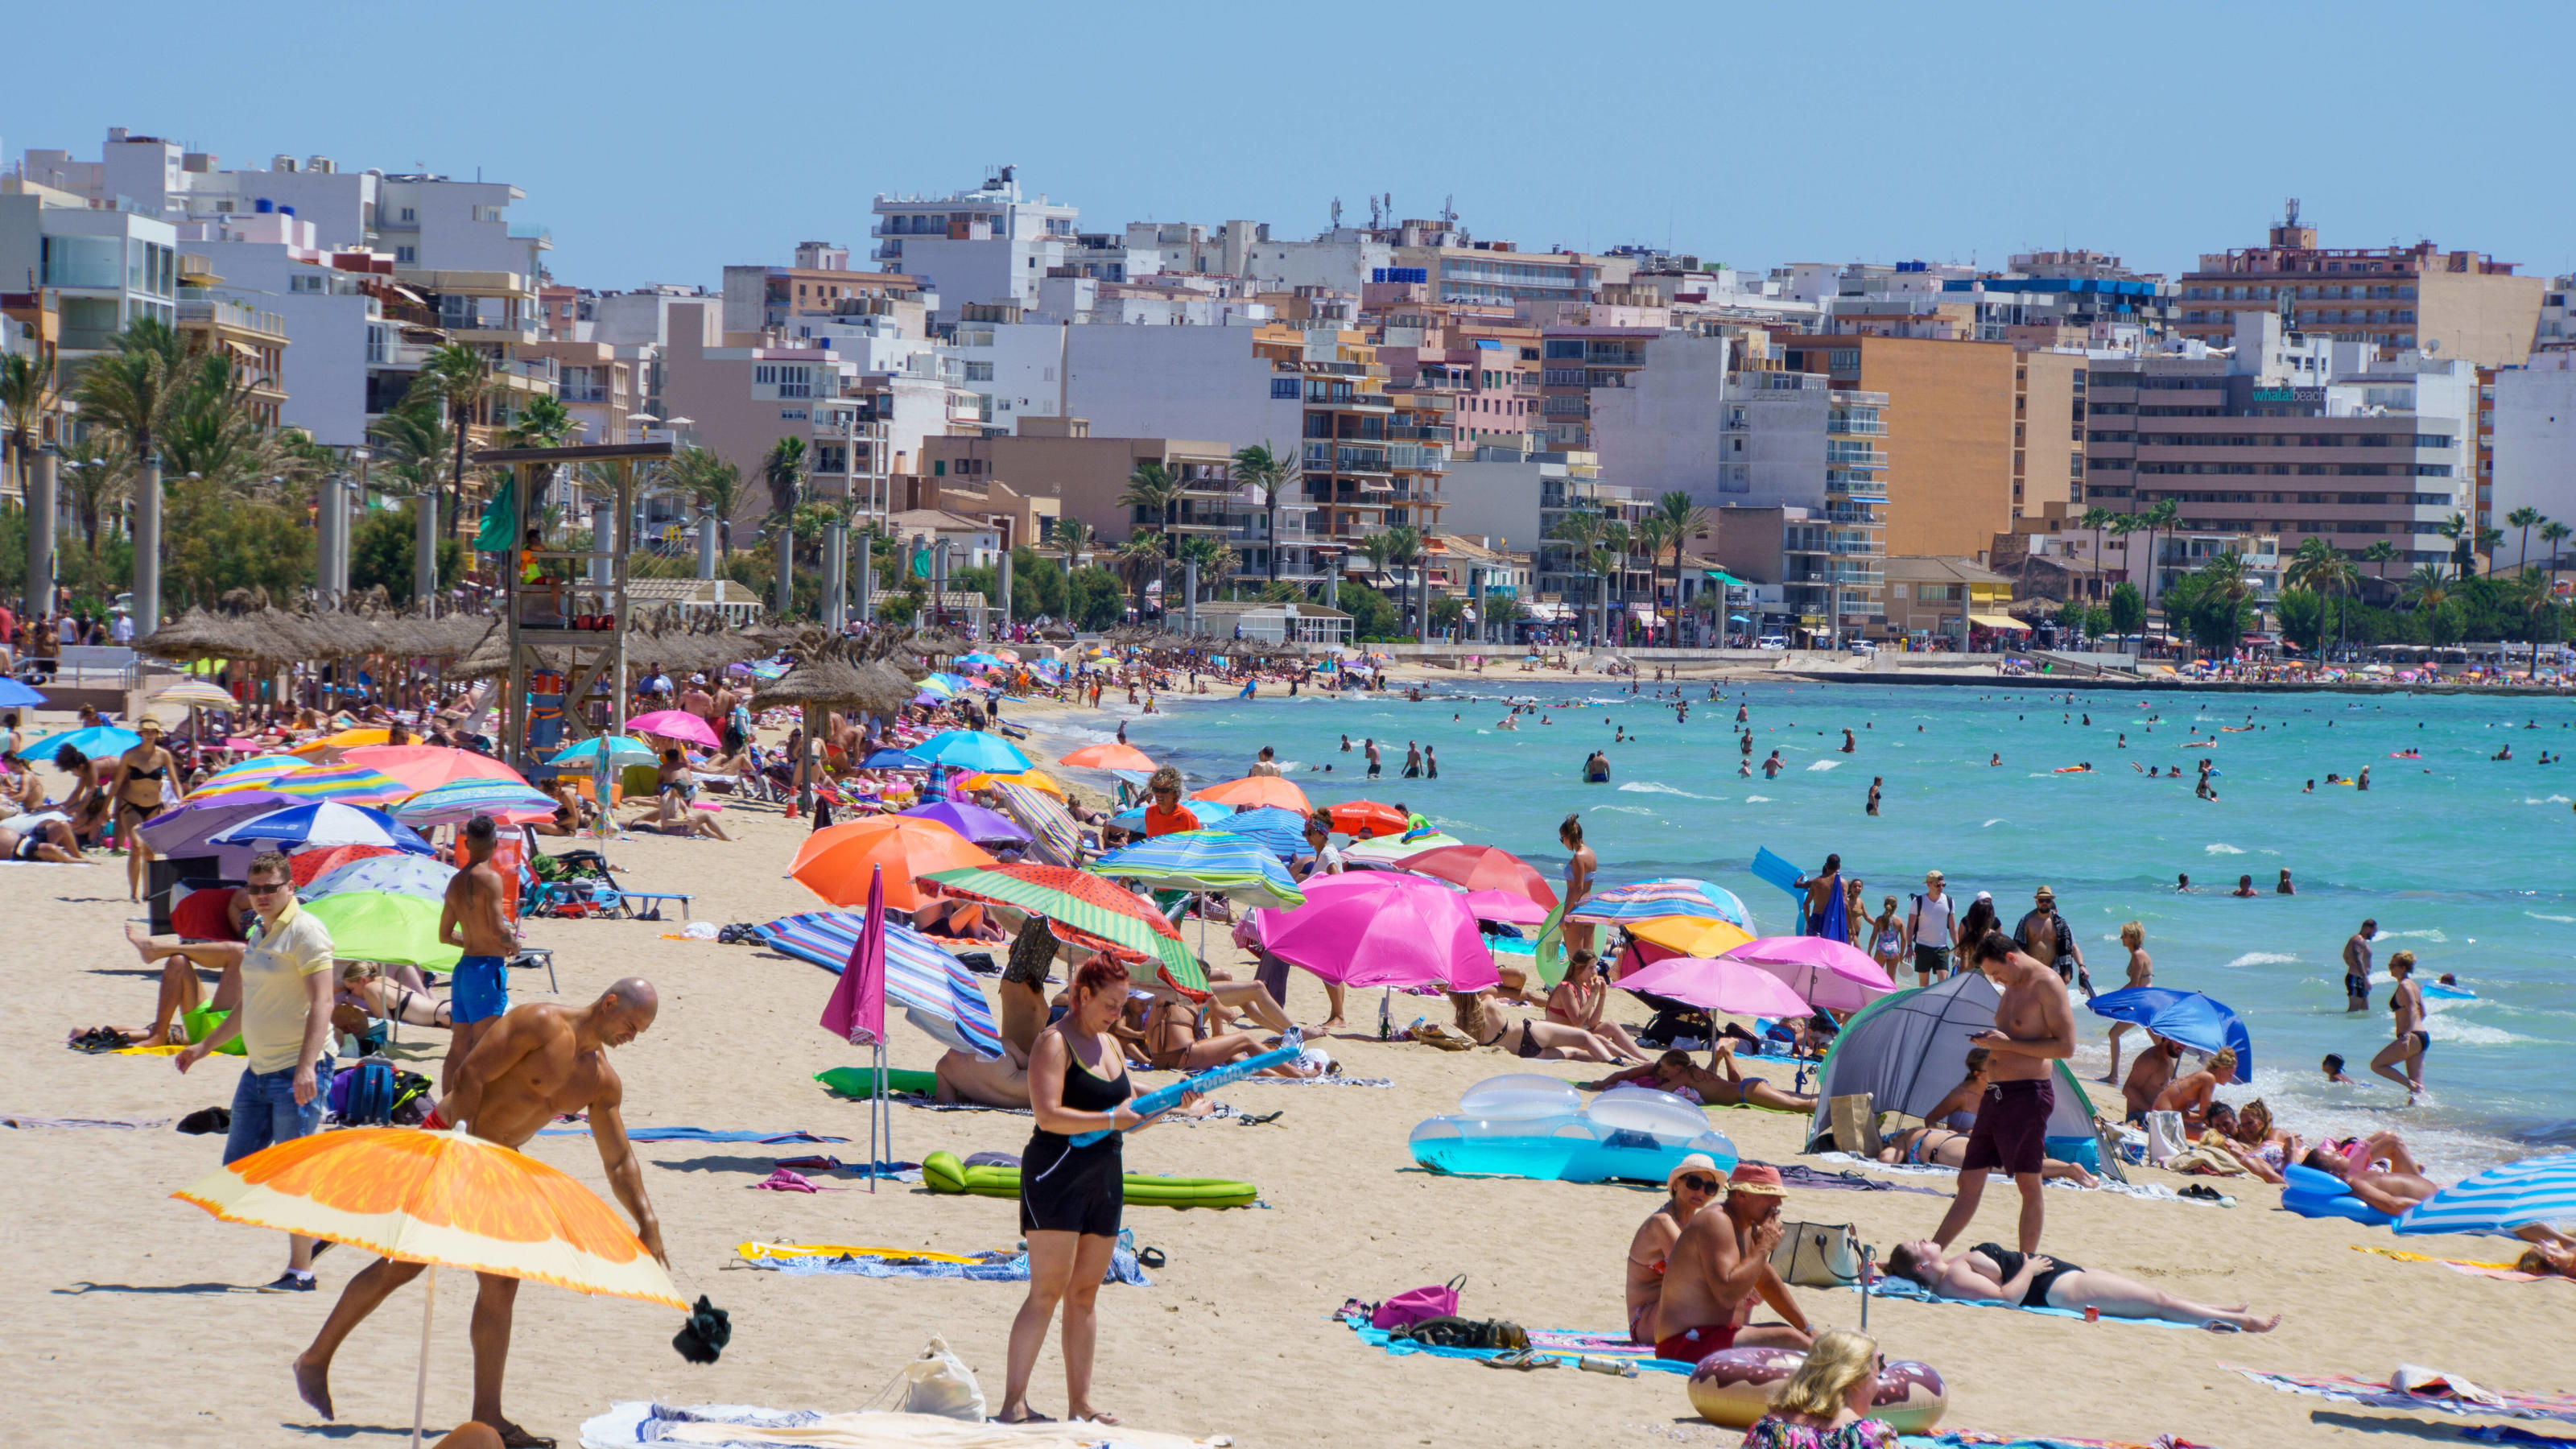 Playa de Palma auf Mallorca im zweiten Jahr der Corona-Pandemie Hochsaison Sommer 2021 -Playa de Palma auf Mallorca im zweiten Jahr der Corona-Pandemie Hochsaison Sommer 2021 -, Mallorca Balearische Inseln Spanien Playa de Palma *** Playa de Palma in